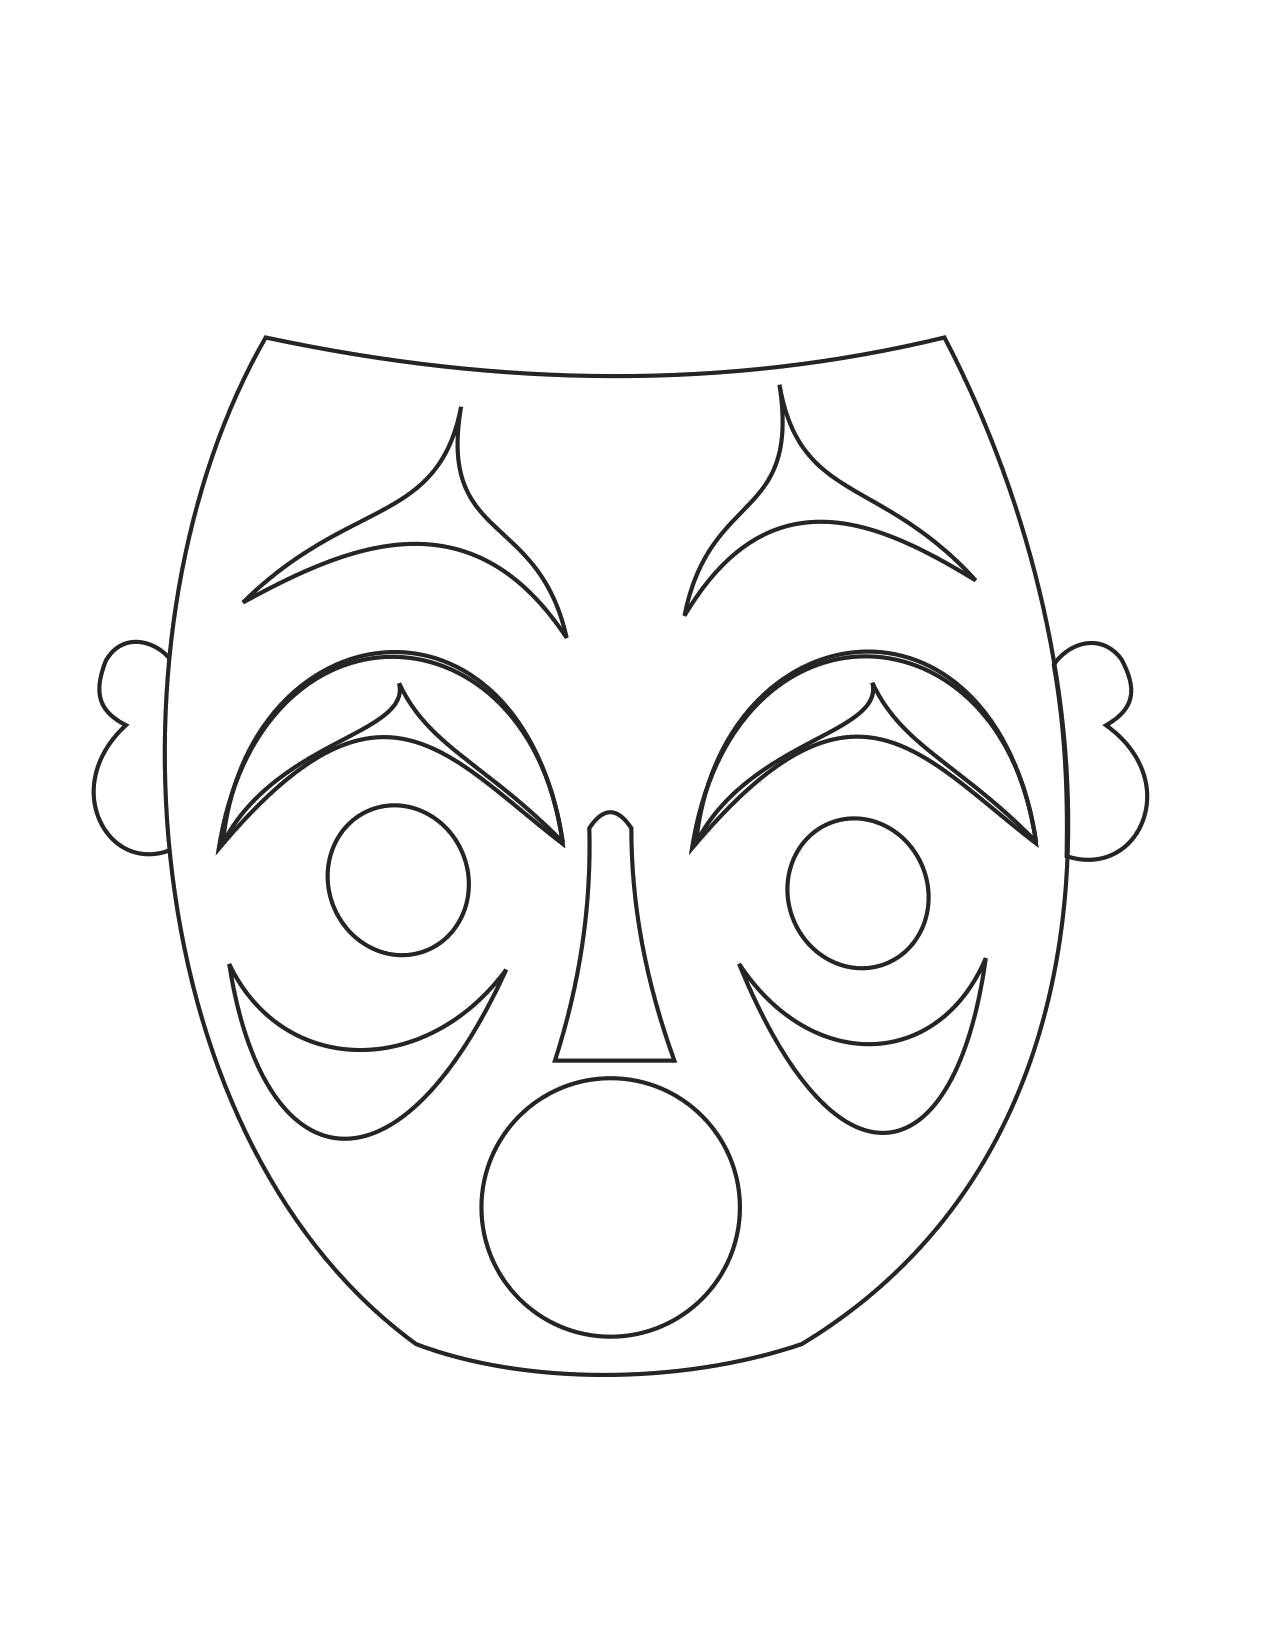 Косметика распечатать маски. Маска раскраска. Трафареты театральных масок для лица. Маска для распечатки. Шаблоны масок для театра.